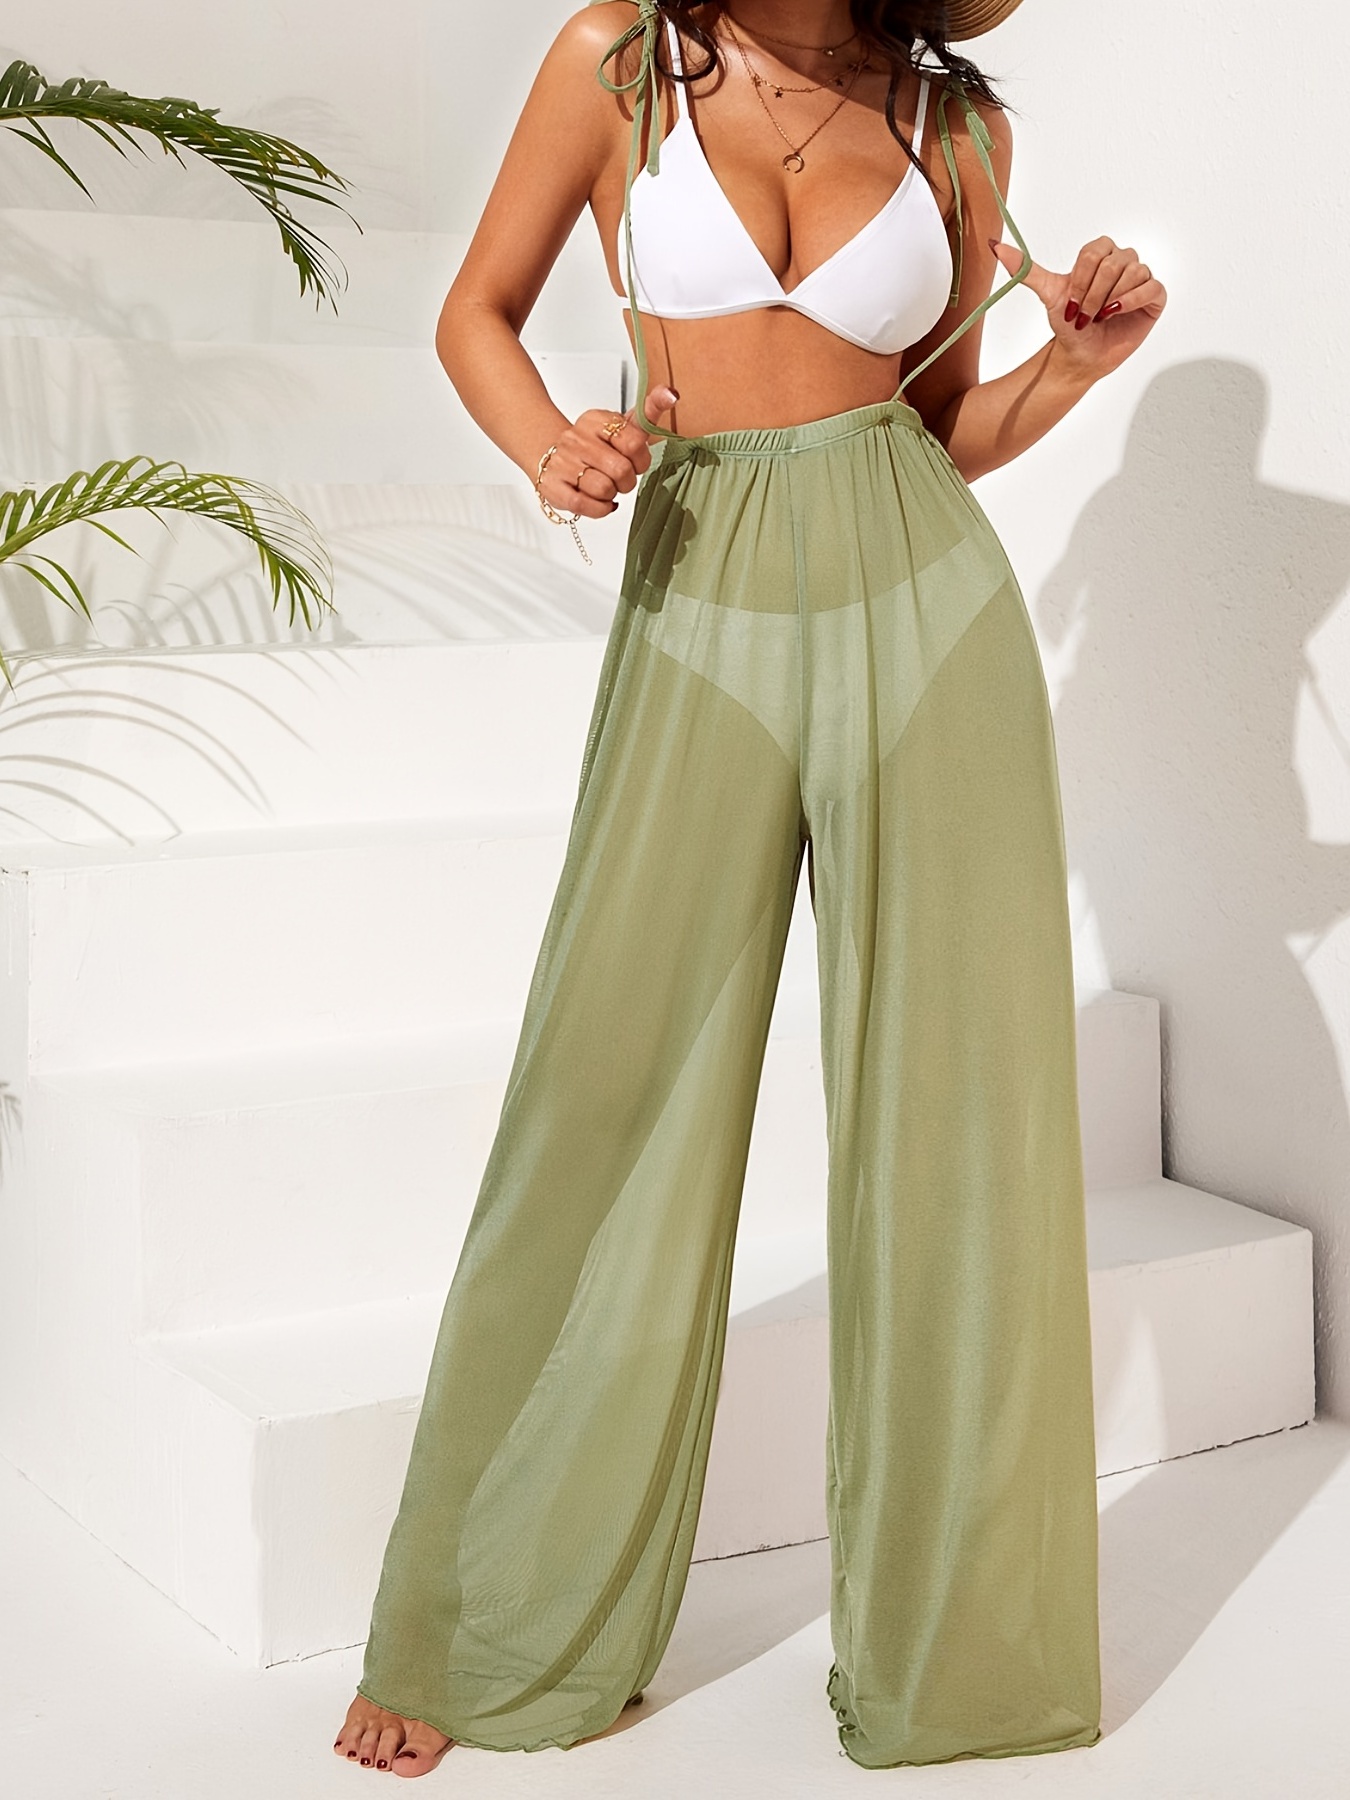 Pantalones de malla transparente para mujer, para fiesta, club, cintura  alta, elástica, pierna ancha, traje de baño de playa, parte inferior de  bikini